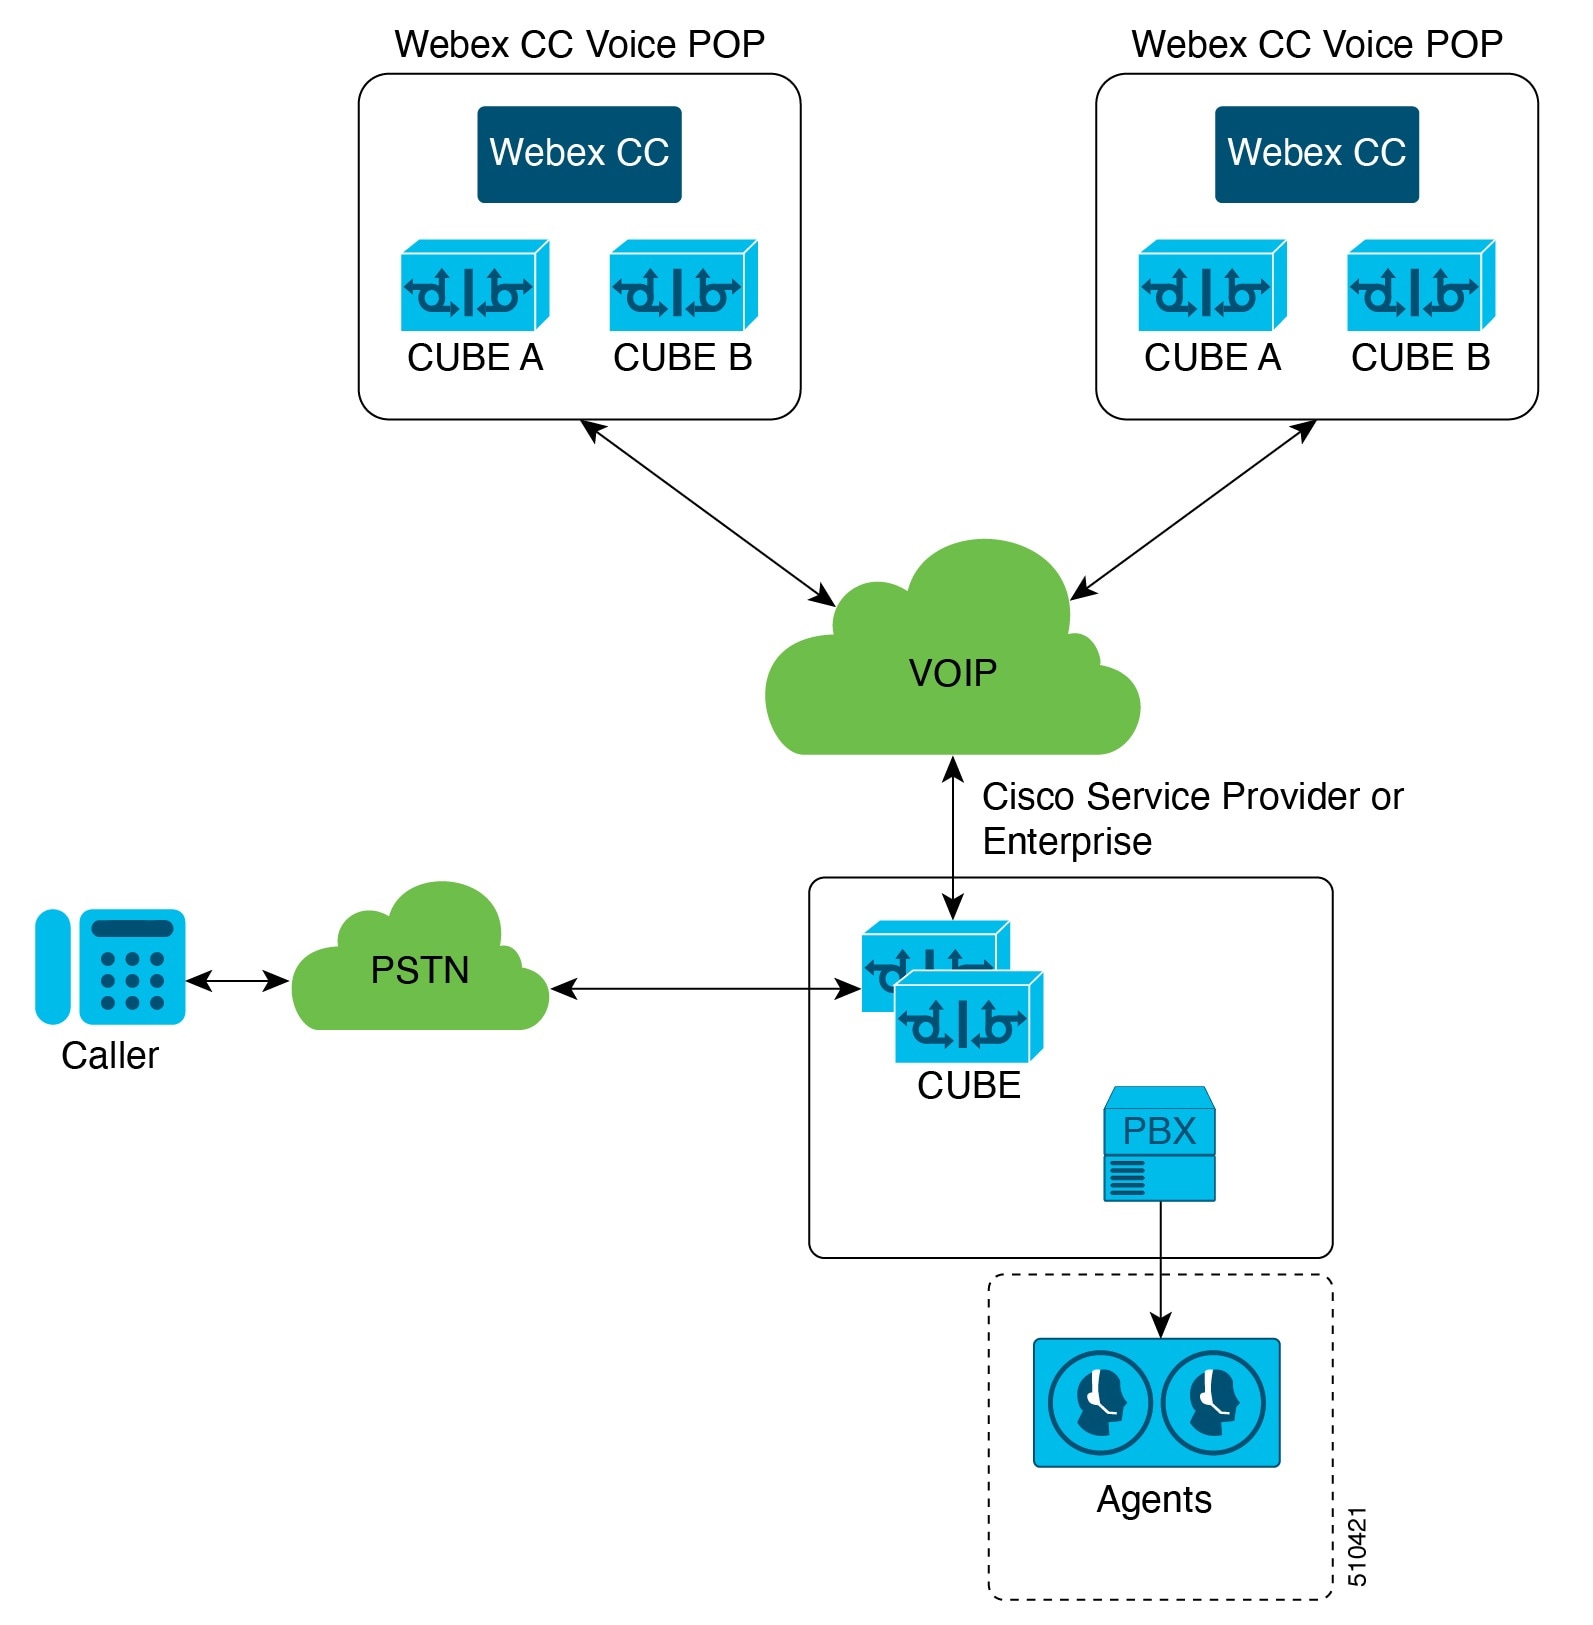 Cisco Service Provider or Enterprise Architecture